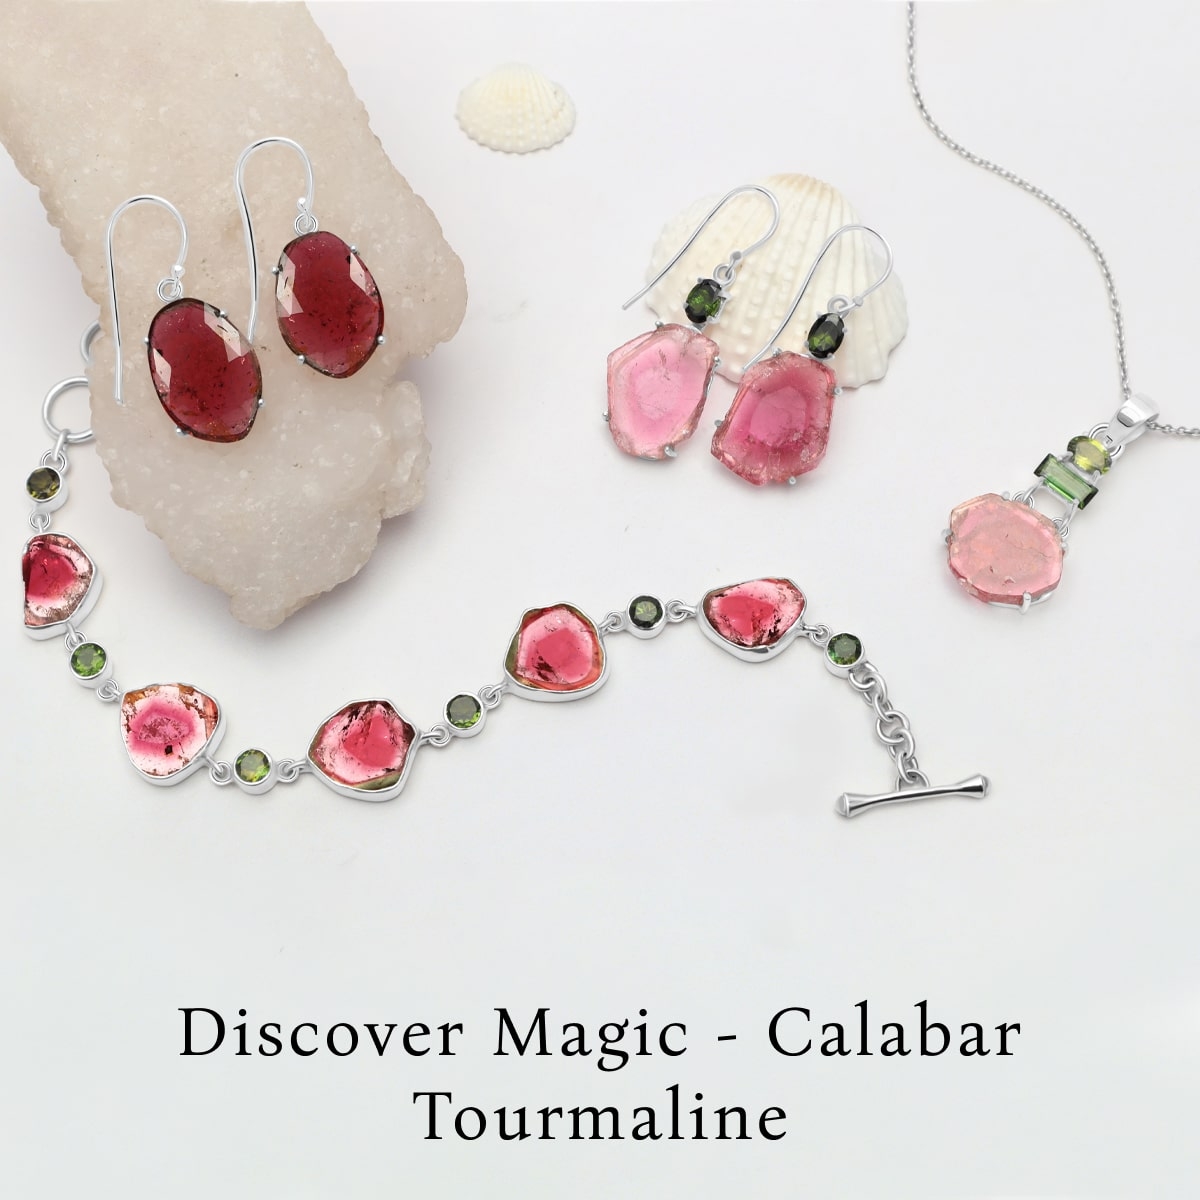 Discovering Calabar Tourmaline's Magic